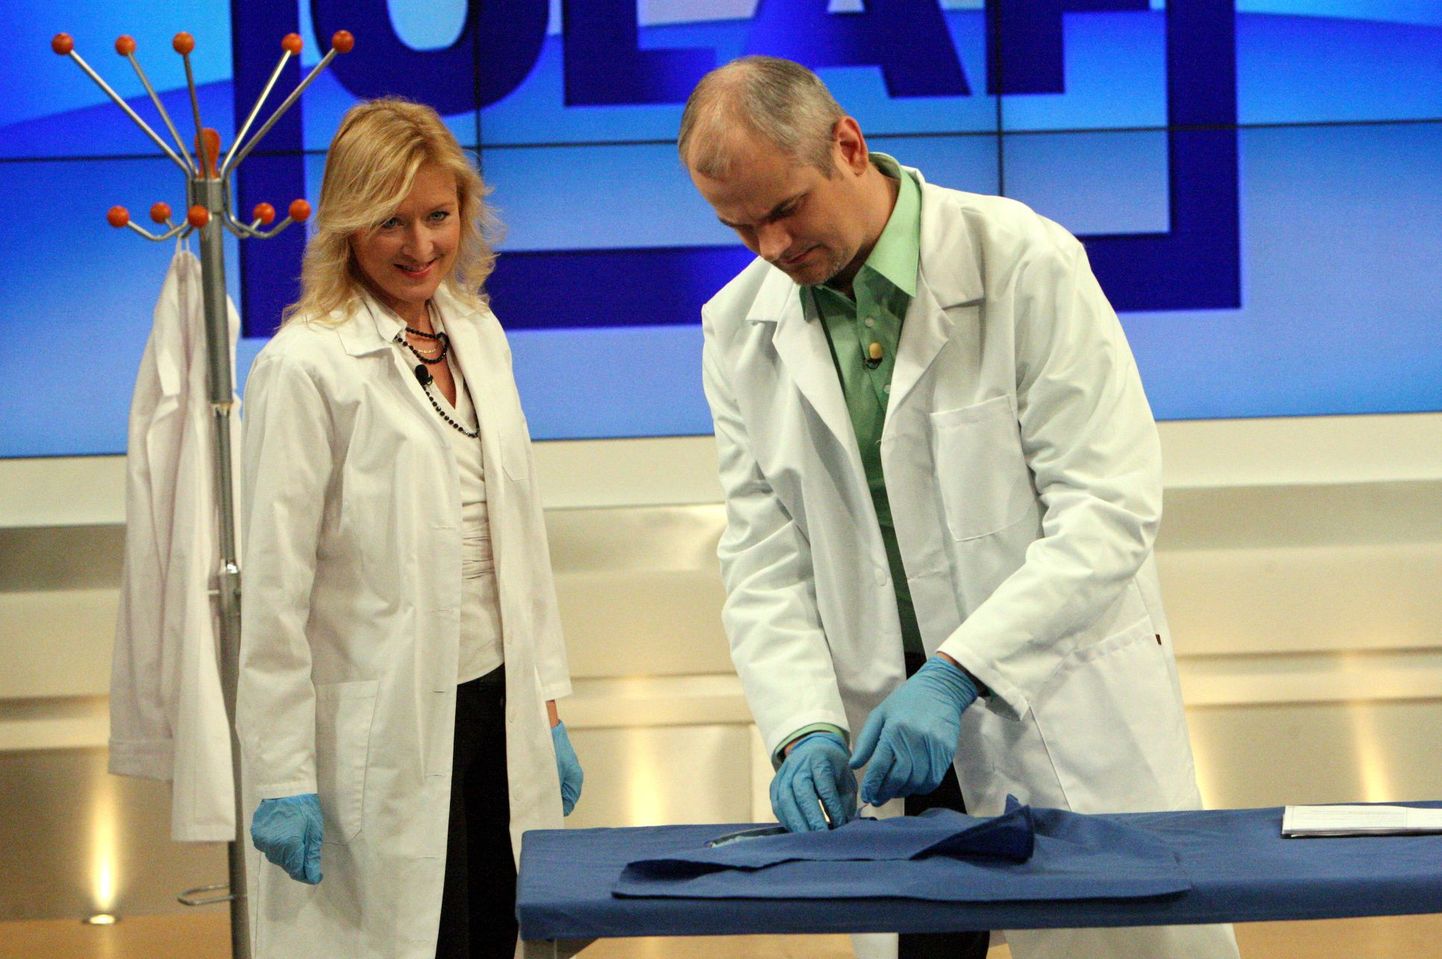 "Tohter Olaf" salvestus - Kanal 2 selle 
kevade uus saade on "Tohter Olaf". See on maailmakuulsa 
meditsiiniteemalise saate “The Dr. Oz Show” kodumaine versioon